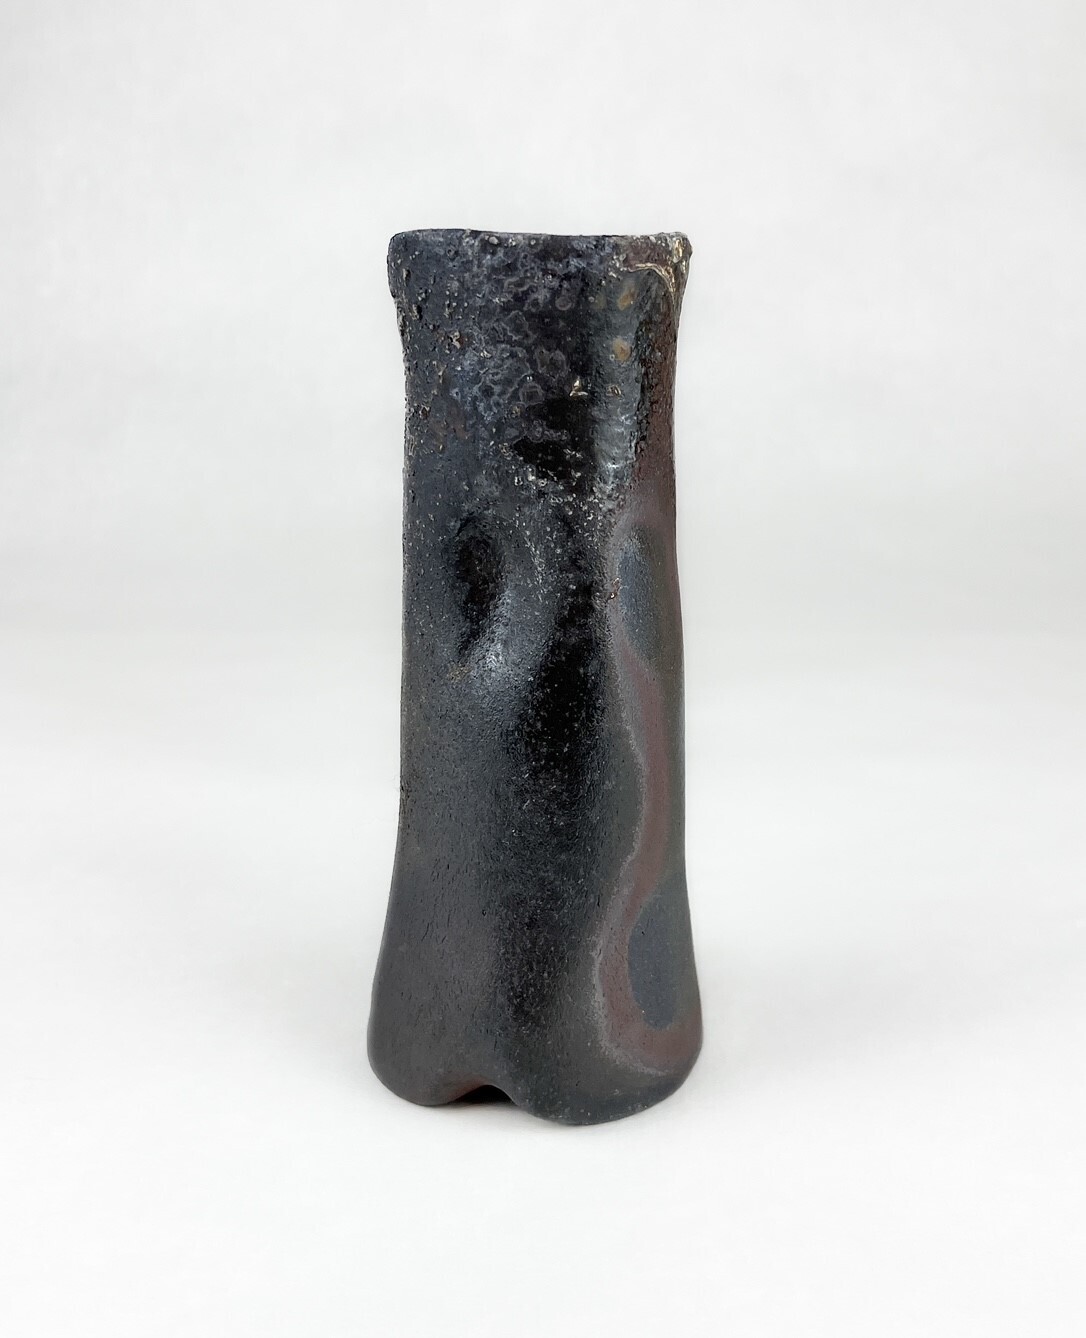 Woodfired Pottery Vase